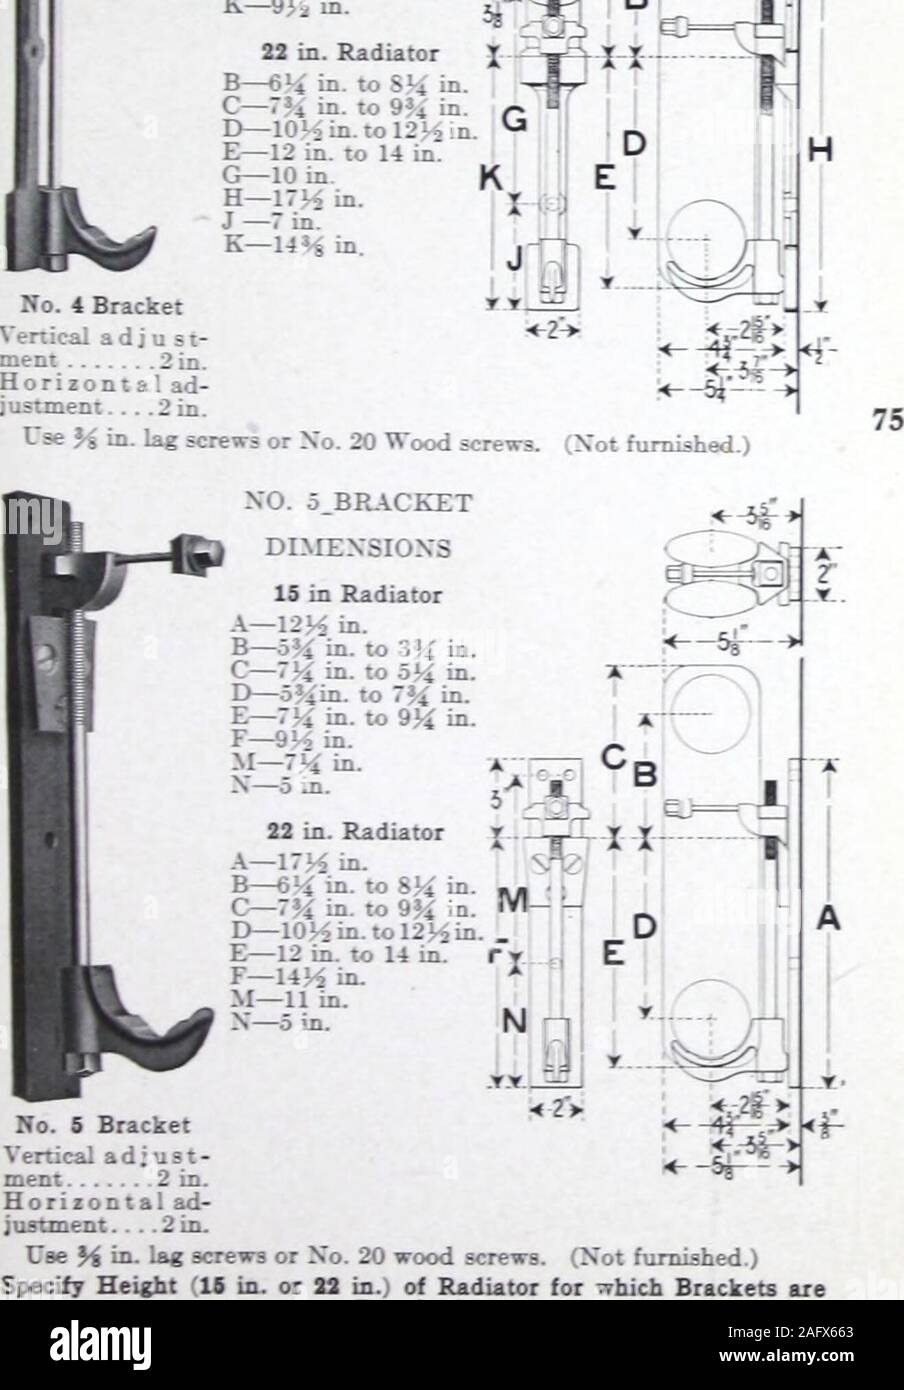 Caldera y radiador : Catálogo 1146. (No) los soportes del radiador